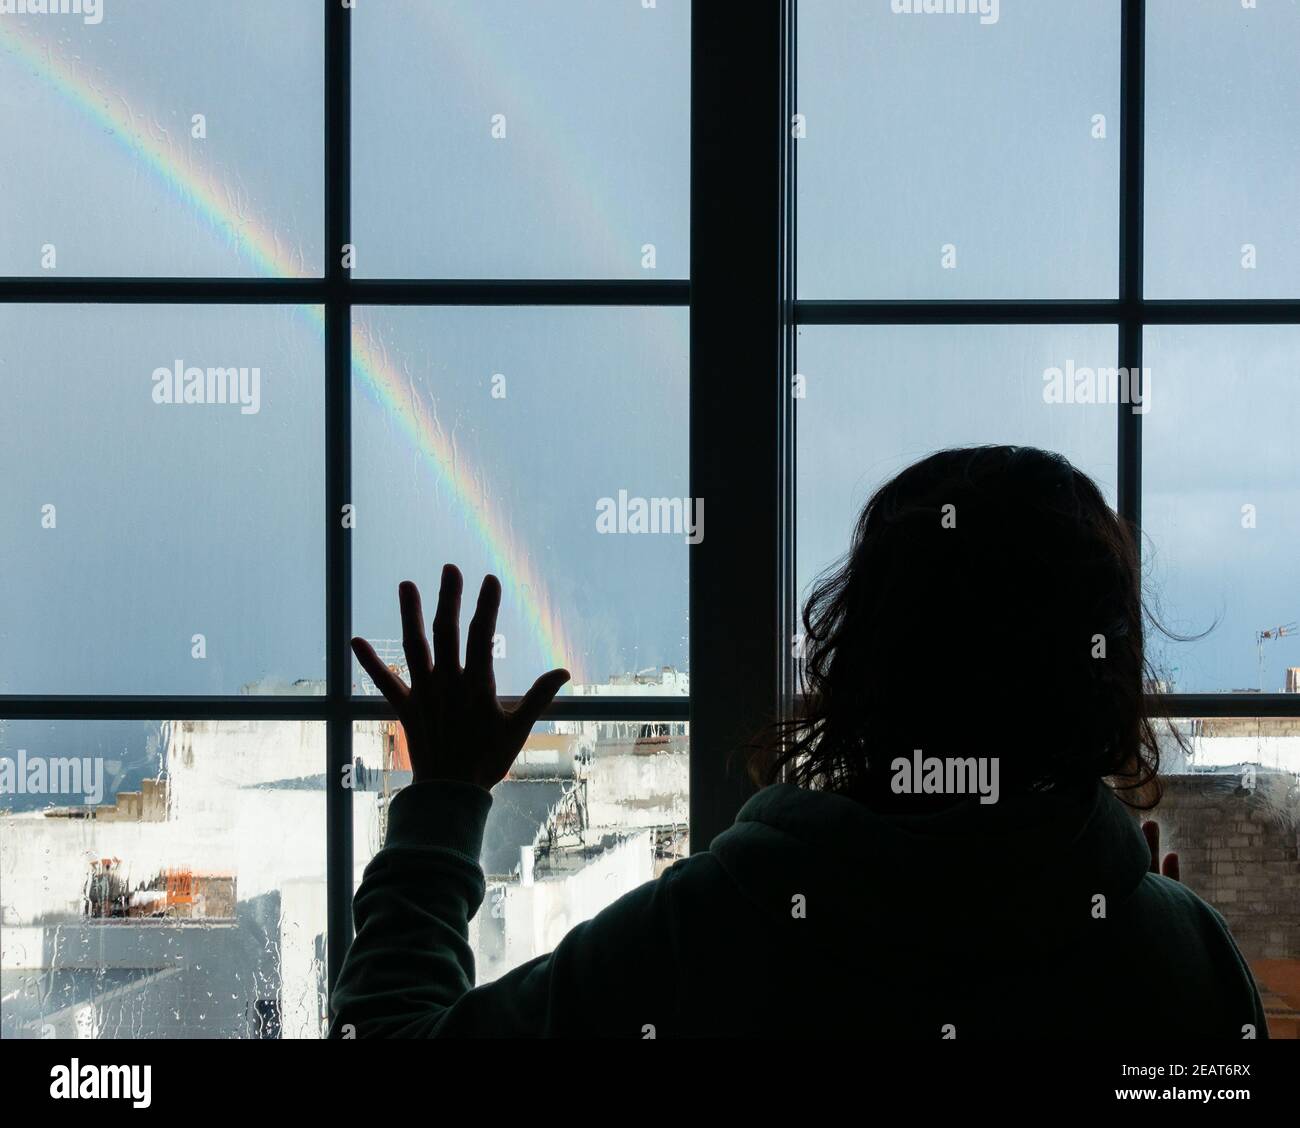 Donna che guarda fuori dalla finestra verso l'arcobaleno nel giorno piovoso. Immagine di Conept; depressione femminile, abuso domestico, autoisolamento, quarantena, Coronavirus, Foto Stock